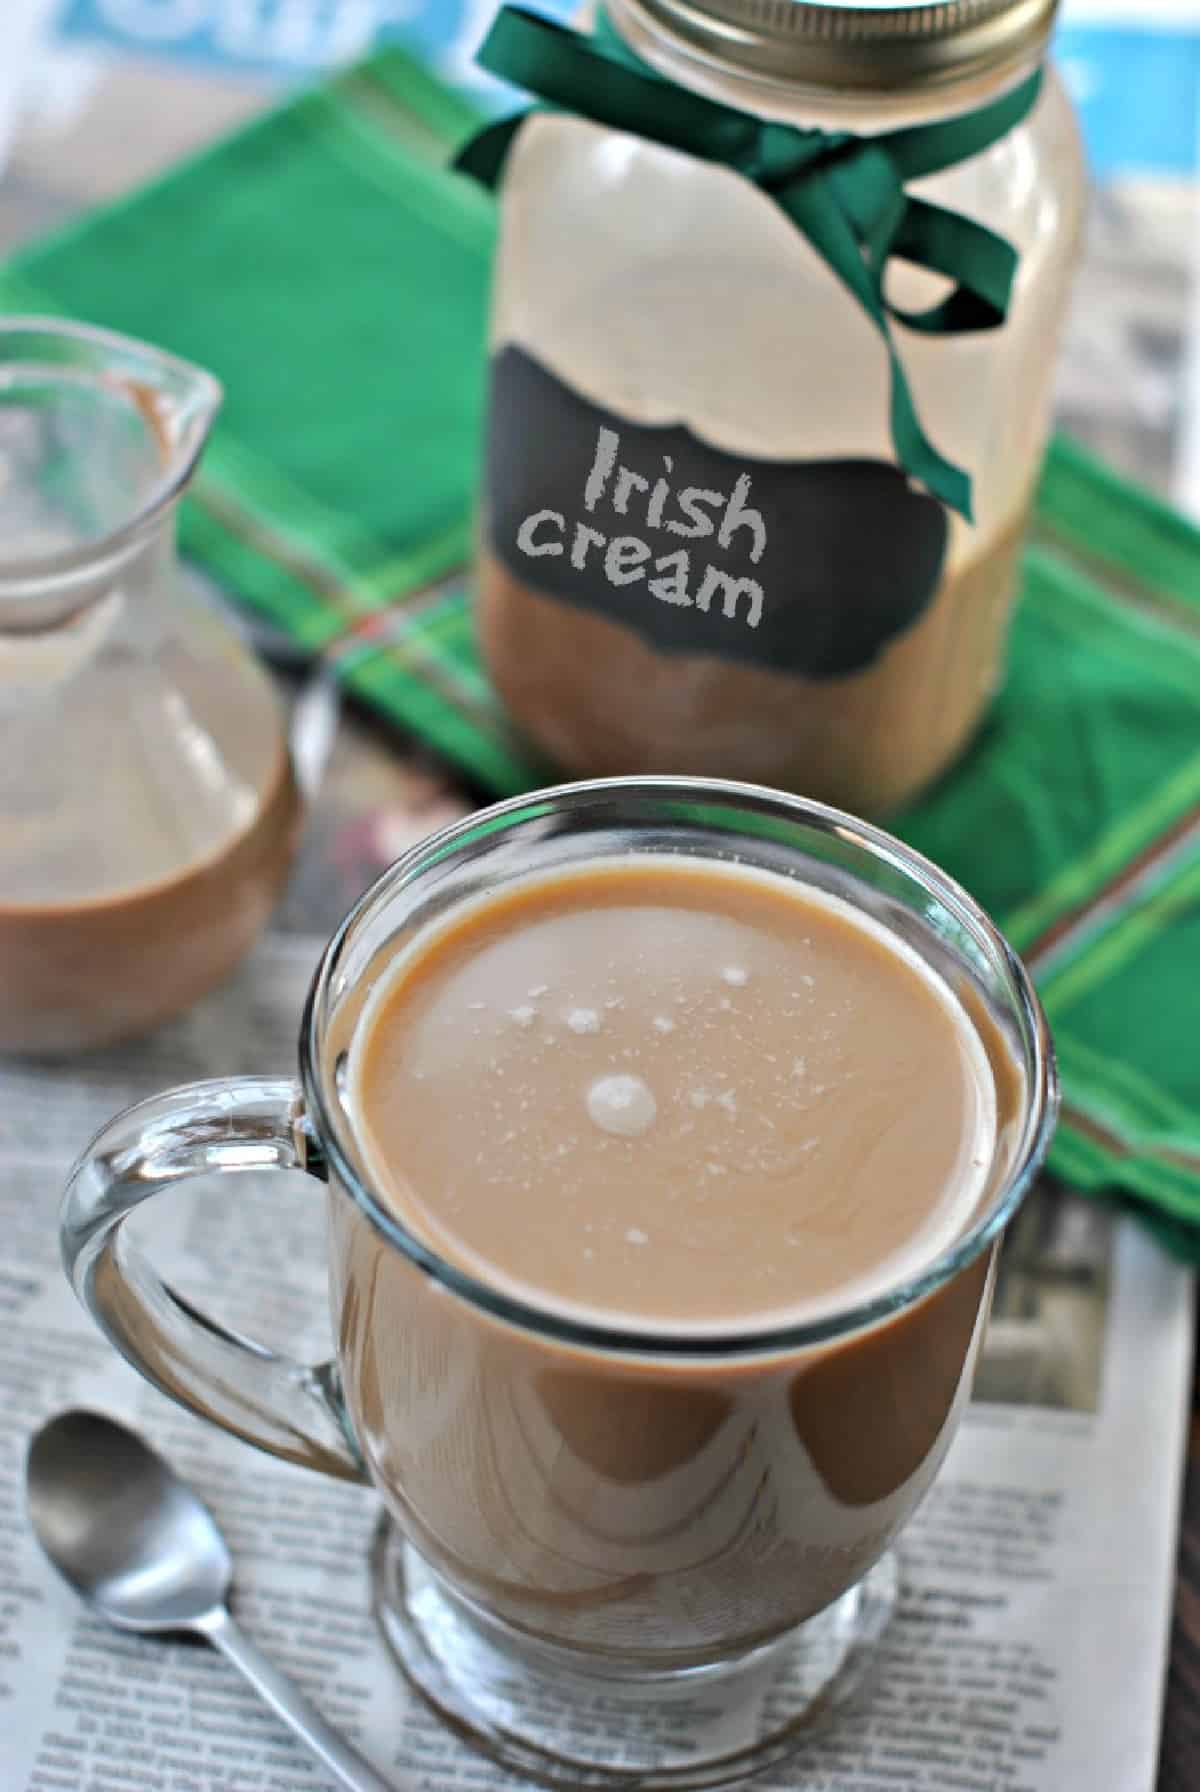 https://www.shugarysweets.com/wp-content/uploads/2014/03/Irish-cream-coffee-creamer-served.jpg